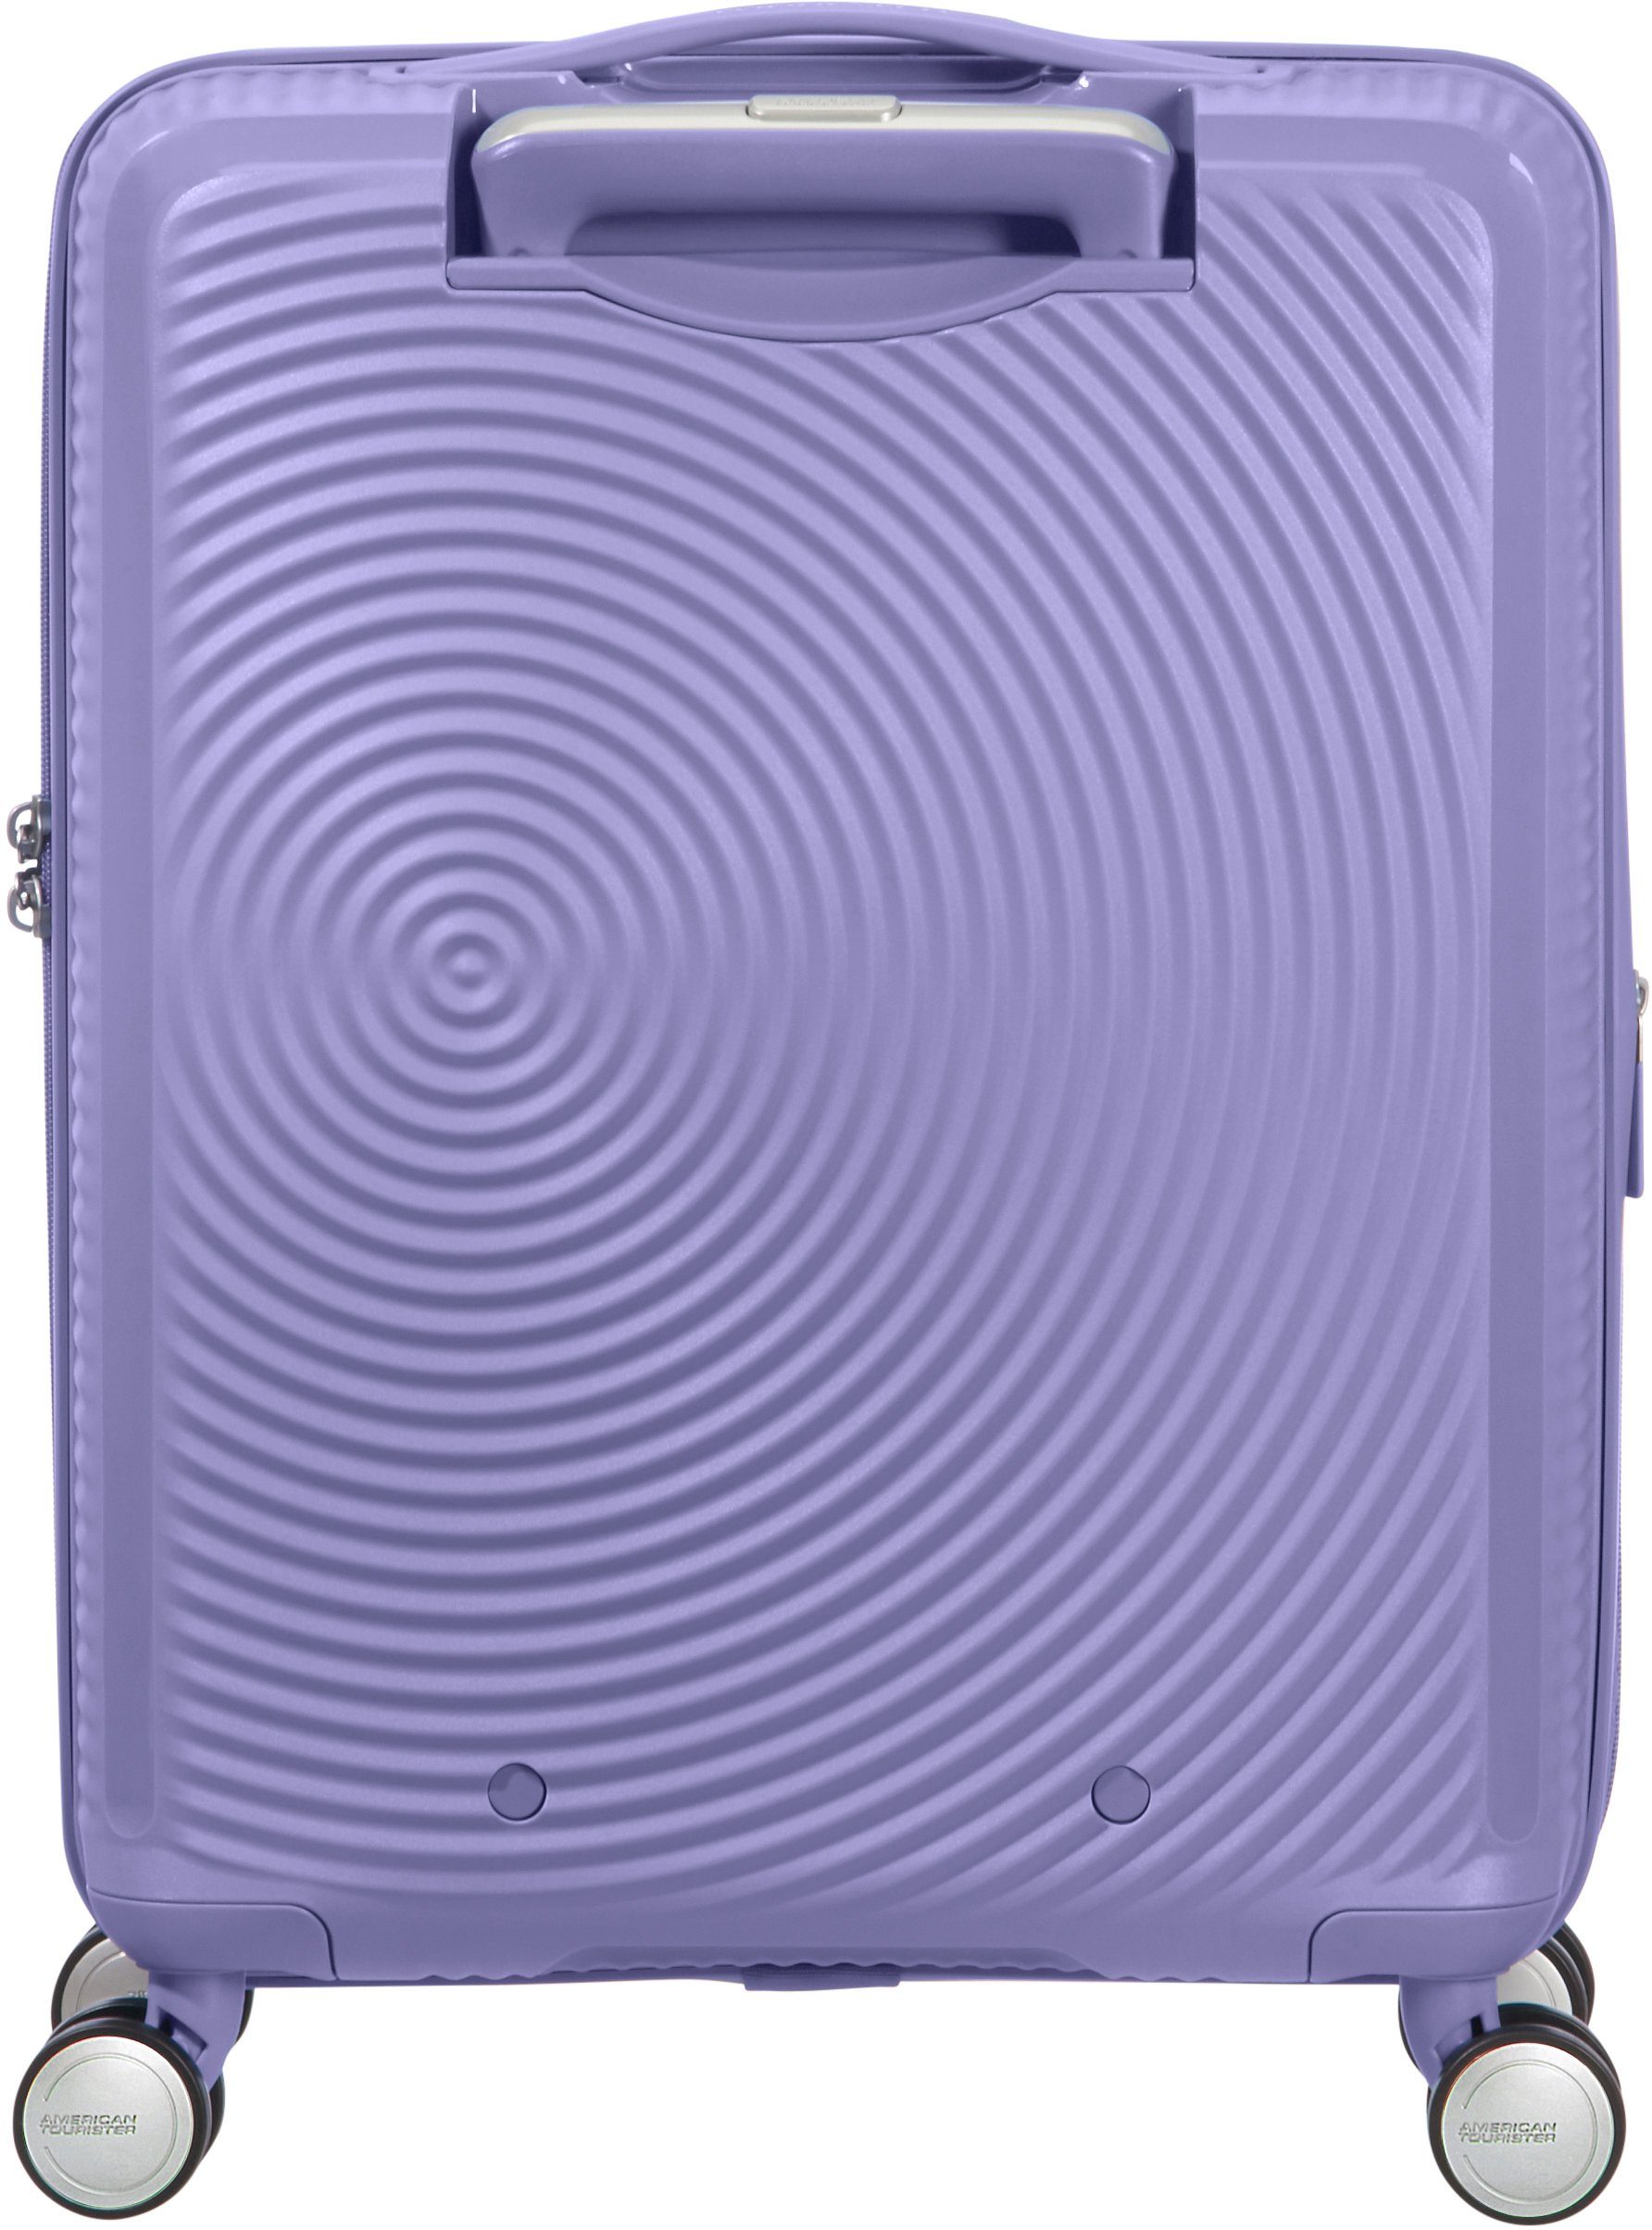 Lavender cm, Rollen, 4 Tourister® Hartschalen-Trolley Soundbox, mit 55 Volumenerweiterung American